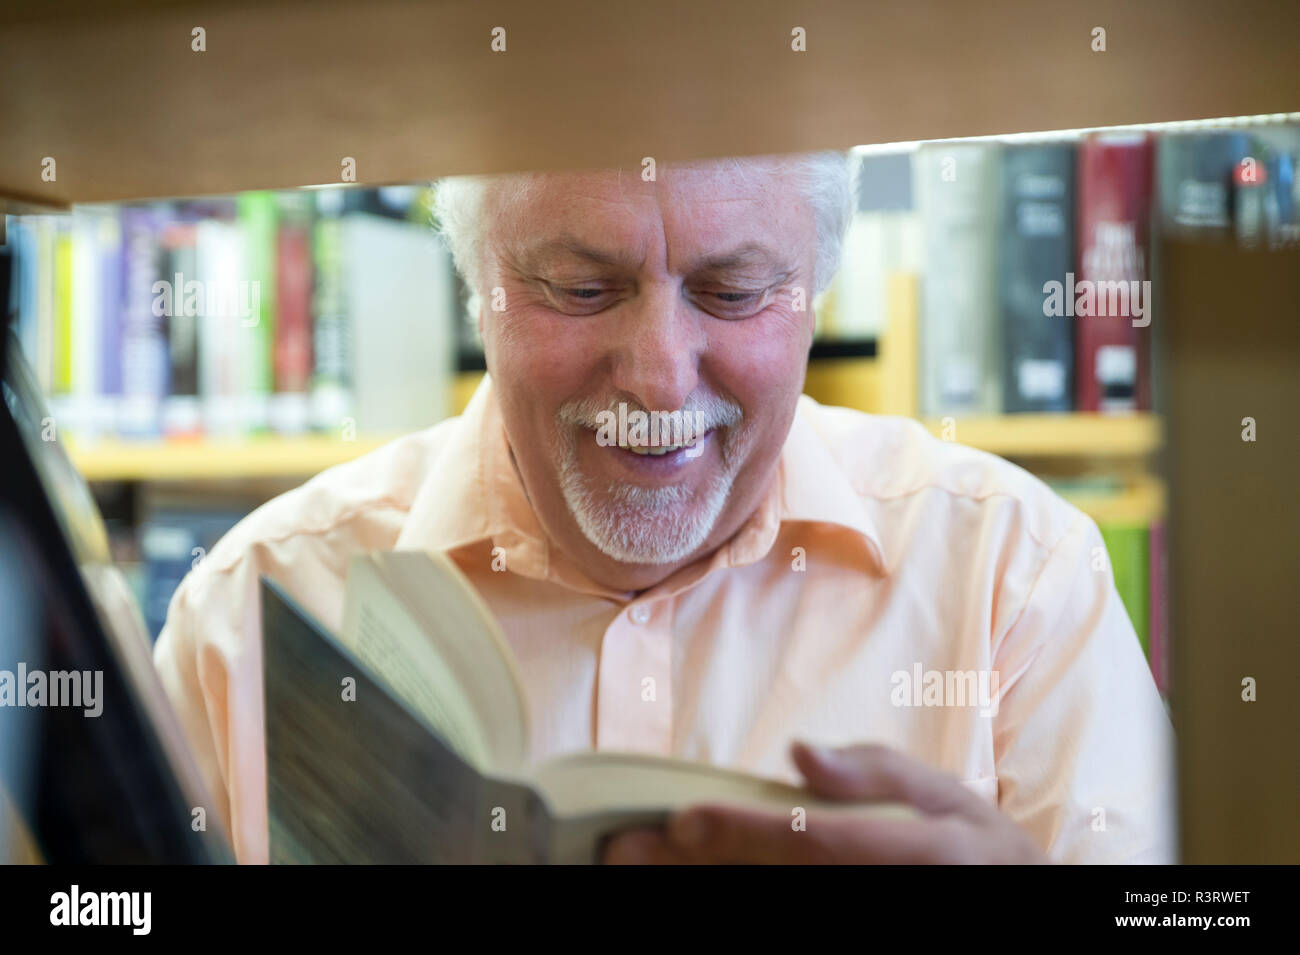 Hauts liest lachen ein Buch einem une BÃ¼cherregal. Grevenbroich, Nordrhein-Westfalen, Deutschland Banque D'Images